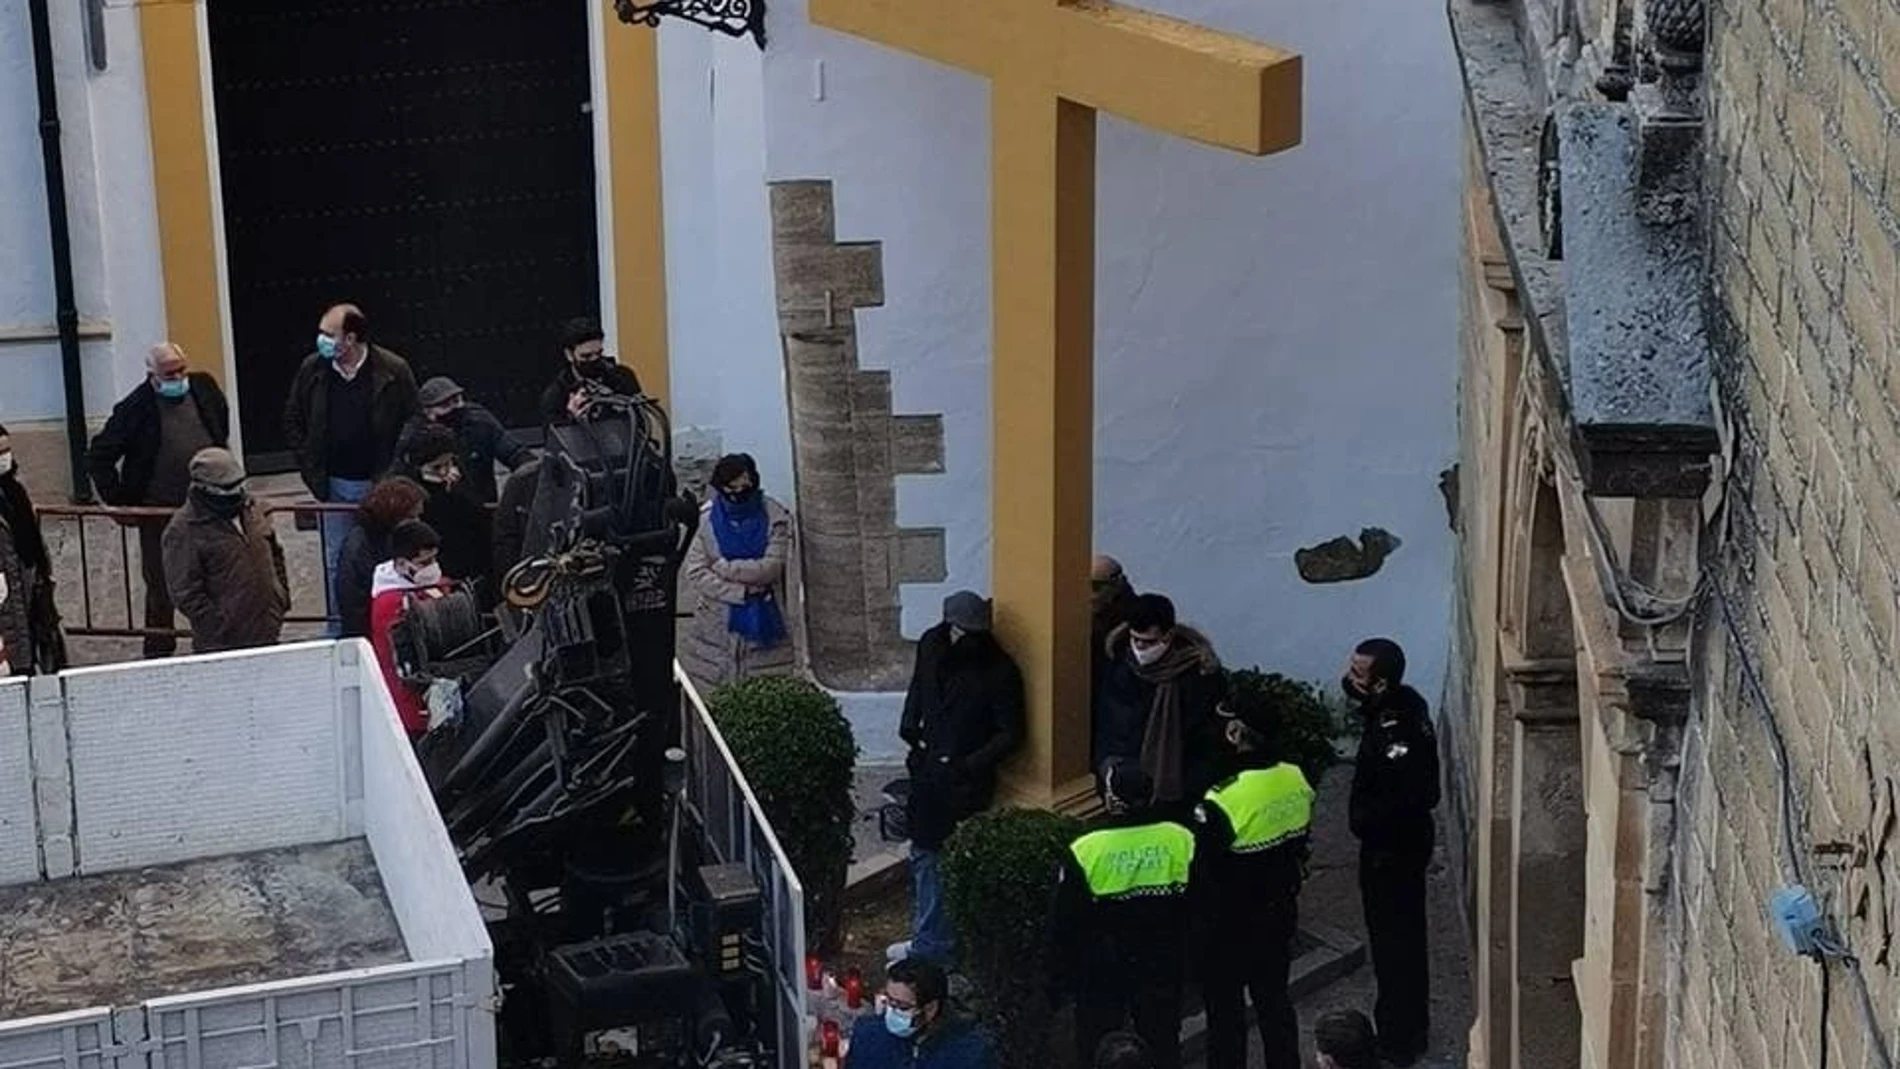 La Cruz del Llanito de las Descalzas en Aguilar de la Frontera, fue retirada por decisión del acalde de IU y con la oposición de los vecinos del municipio.